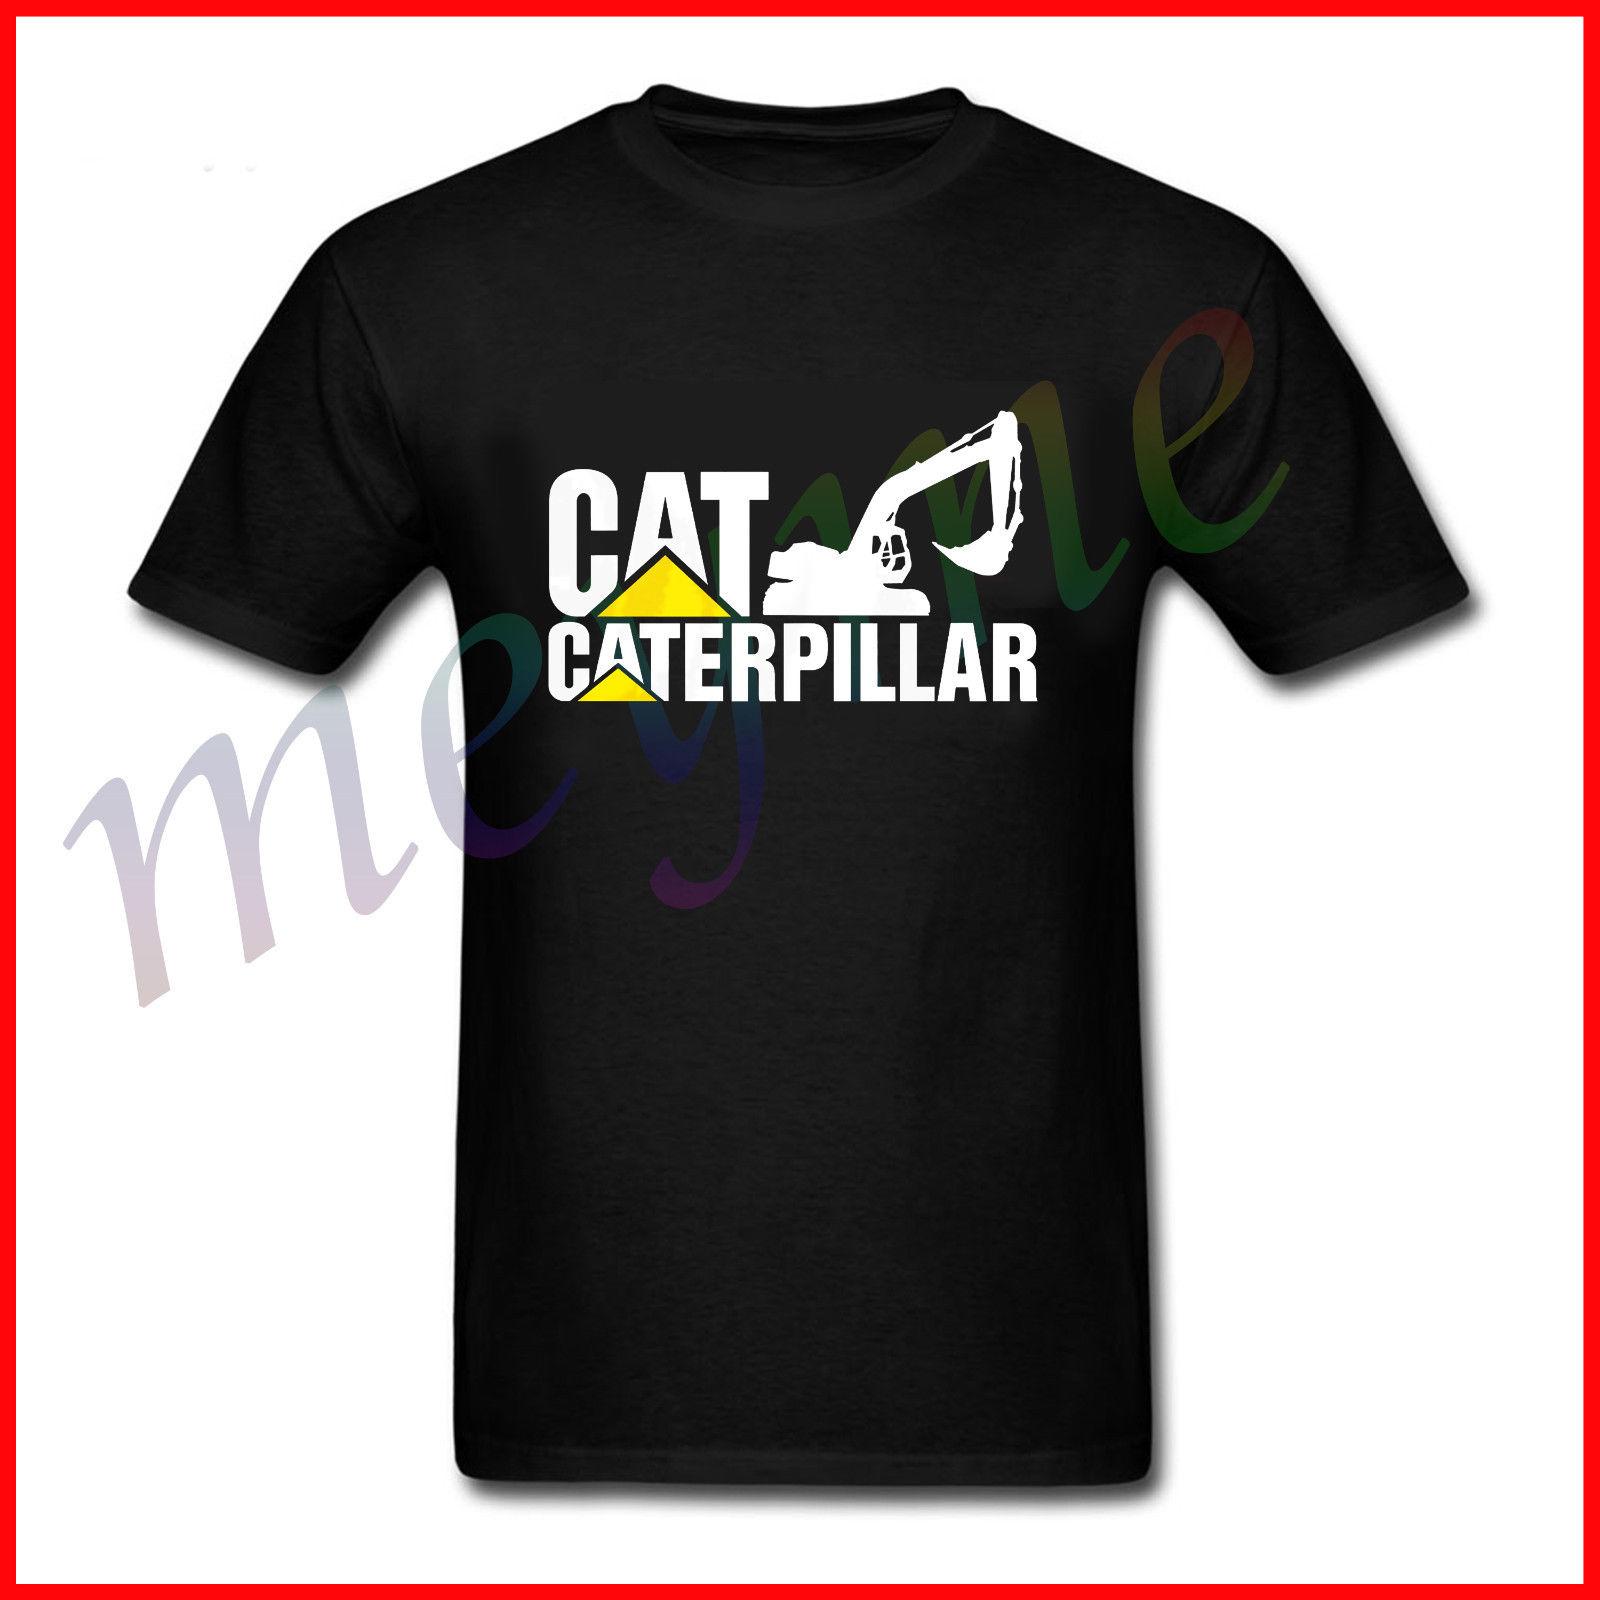 Caterpillar Logo - New Caterpillar Logo Short Sleeve Men'S T Shirt Tee Size S 2XL ...